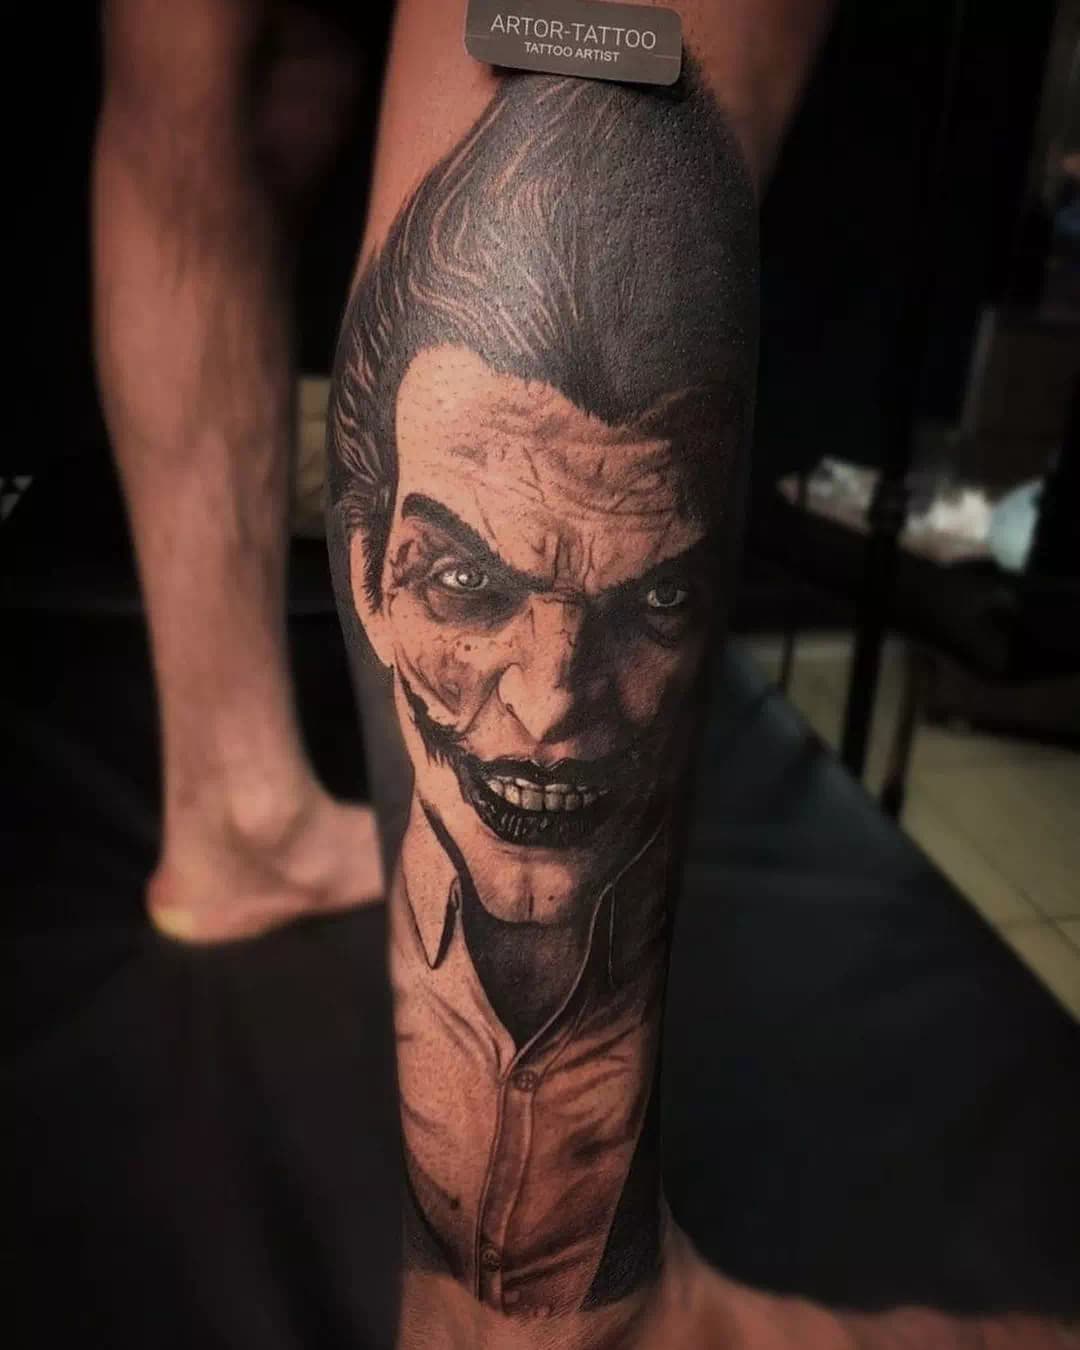 Tatuaje del Joker en la pantorrilla Escuadrón Suicida 2